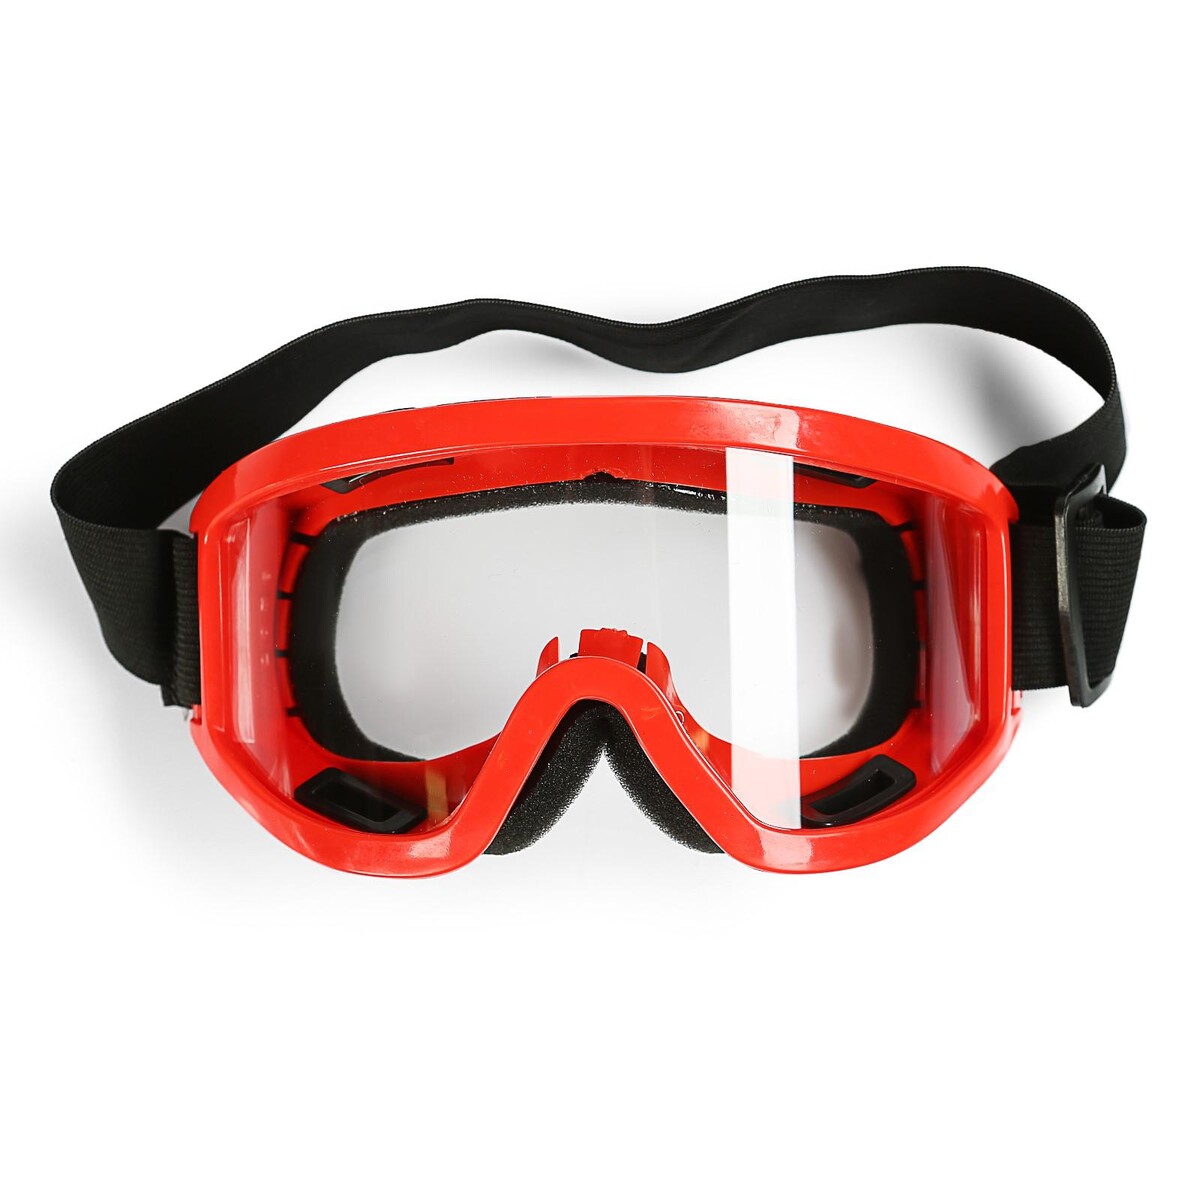 Очки-маска для езды на мототехнике, стекло прозрачное, цвет красный очки маска со съемной защитой носа стекло прозрачное черные